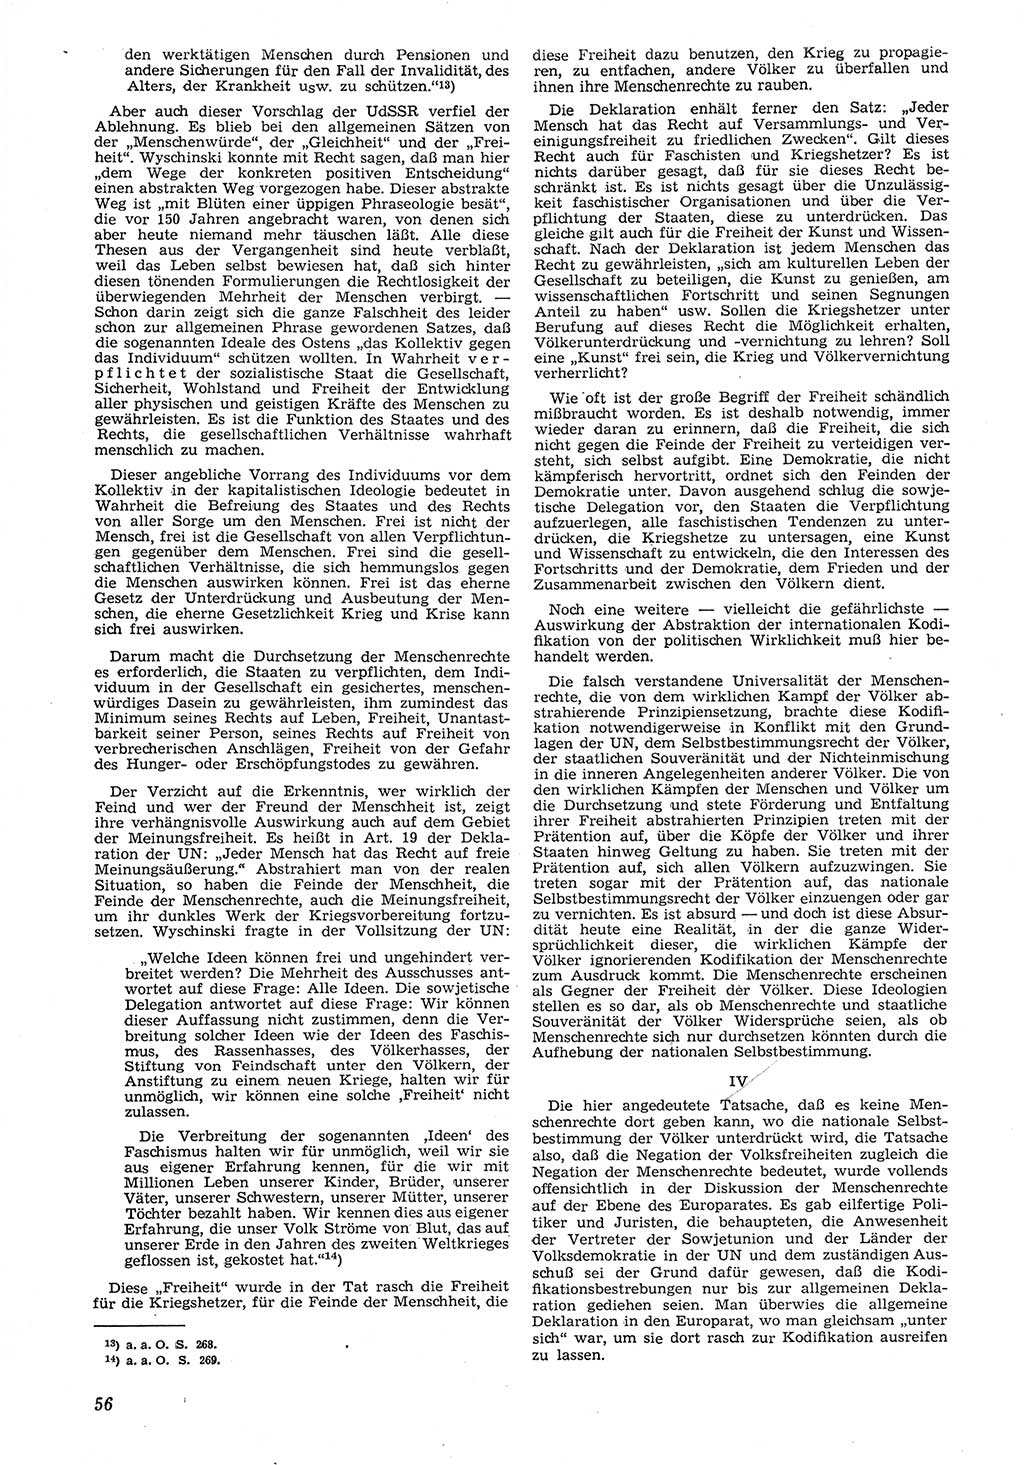 Neue Justiz (NJ), Zeitschrift für Recht und Rechtswissenschaft [Deutsche Demokratische Republik (DDR)], 8. Jahrgang 1954, Seite 56 (NJ DDR 1954, S. 56)